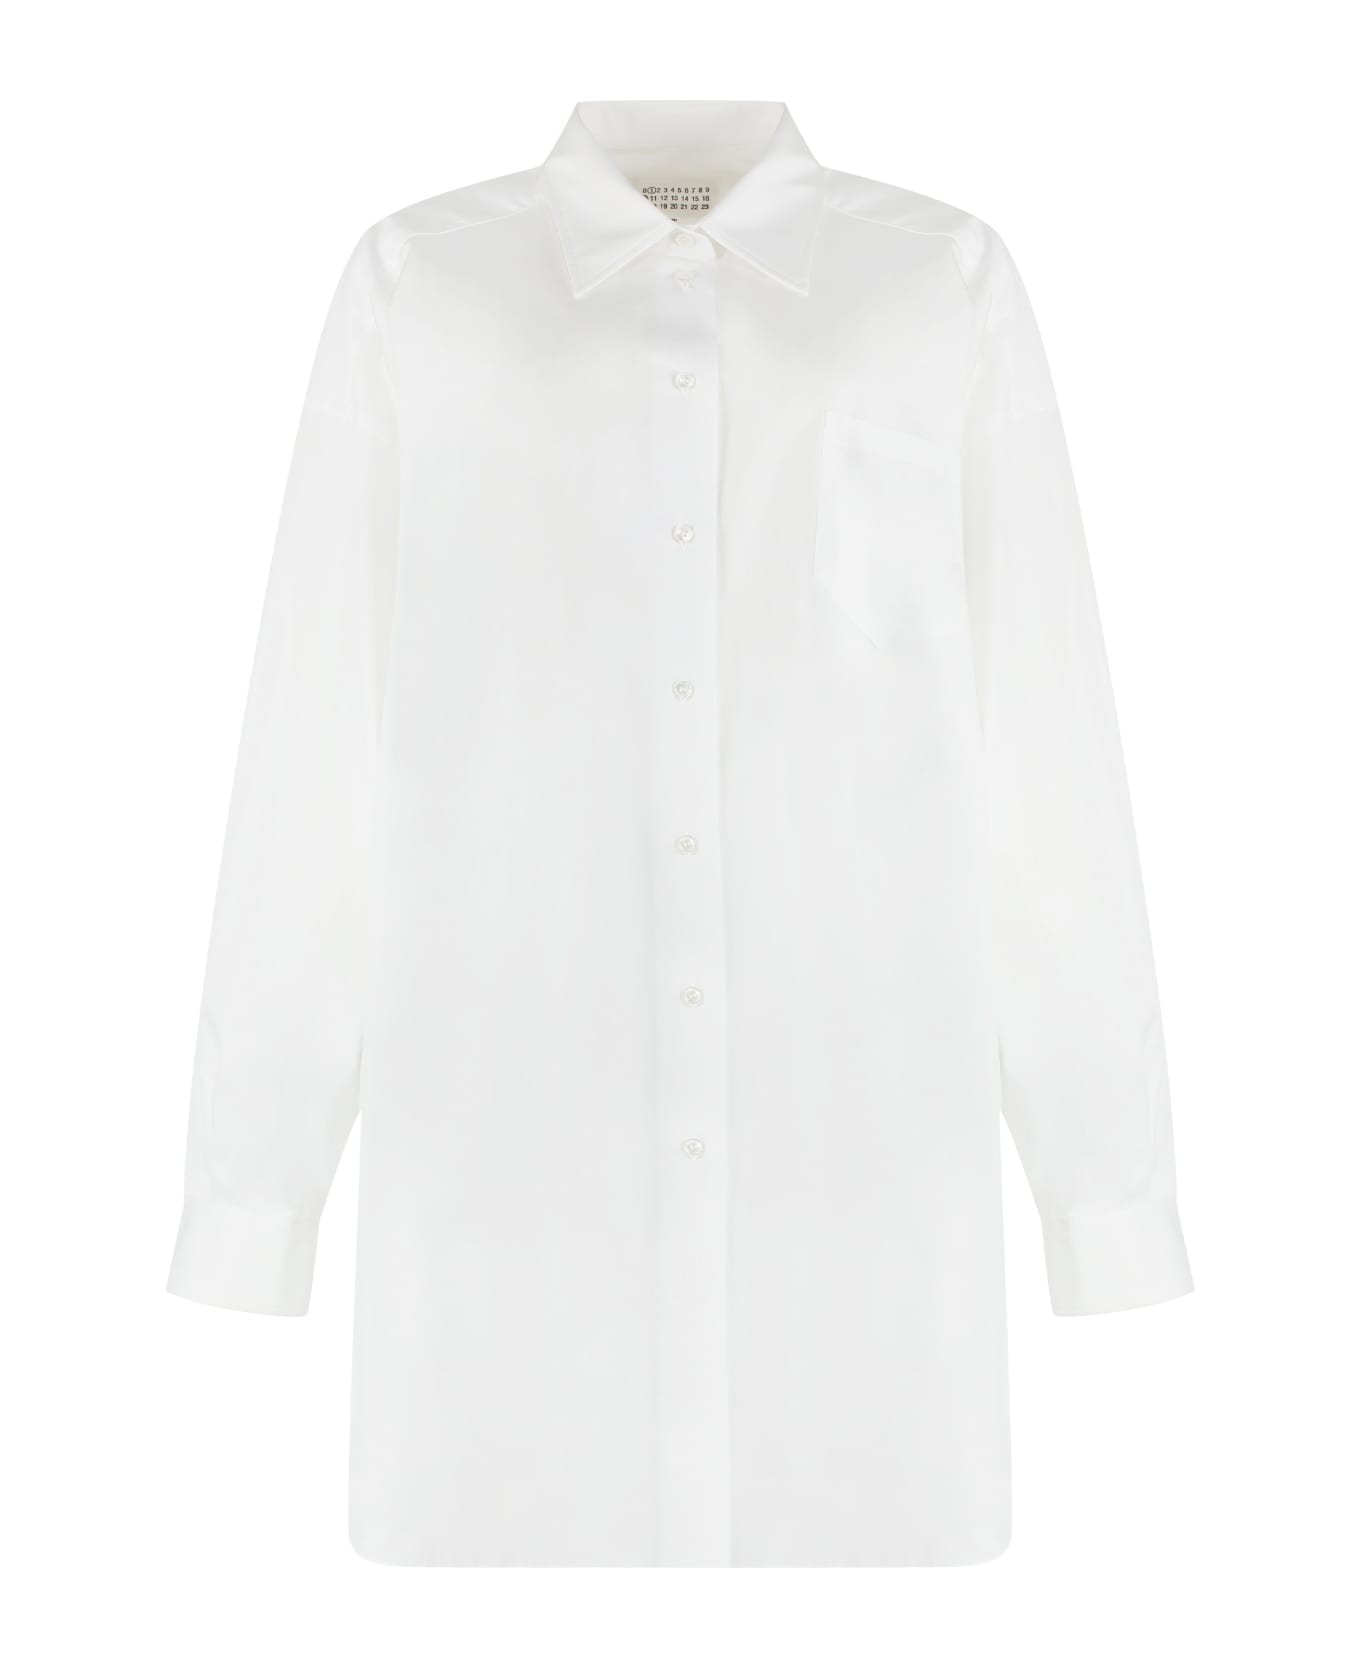 Maison Margiela Long-sleeved Shirt - White シャツ